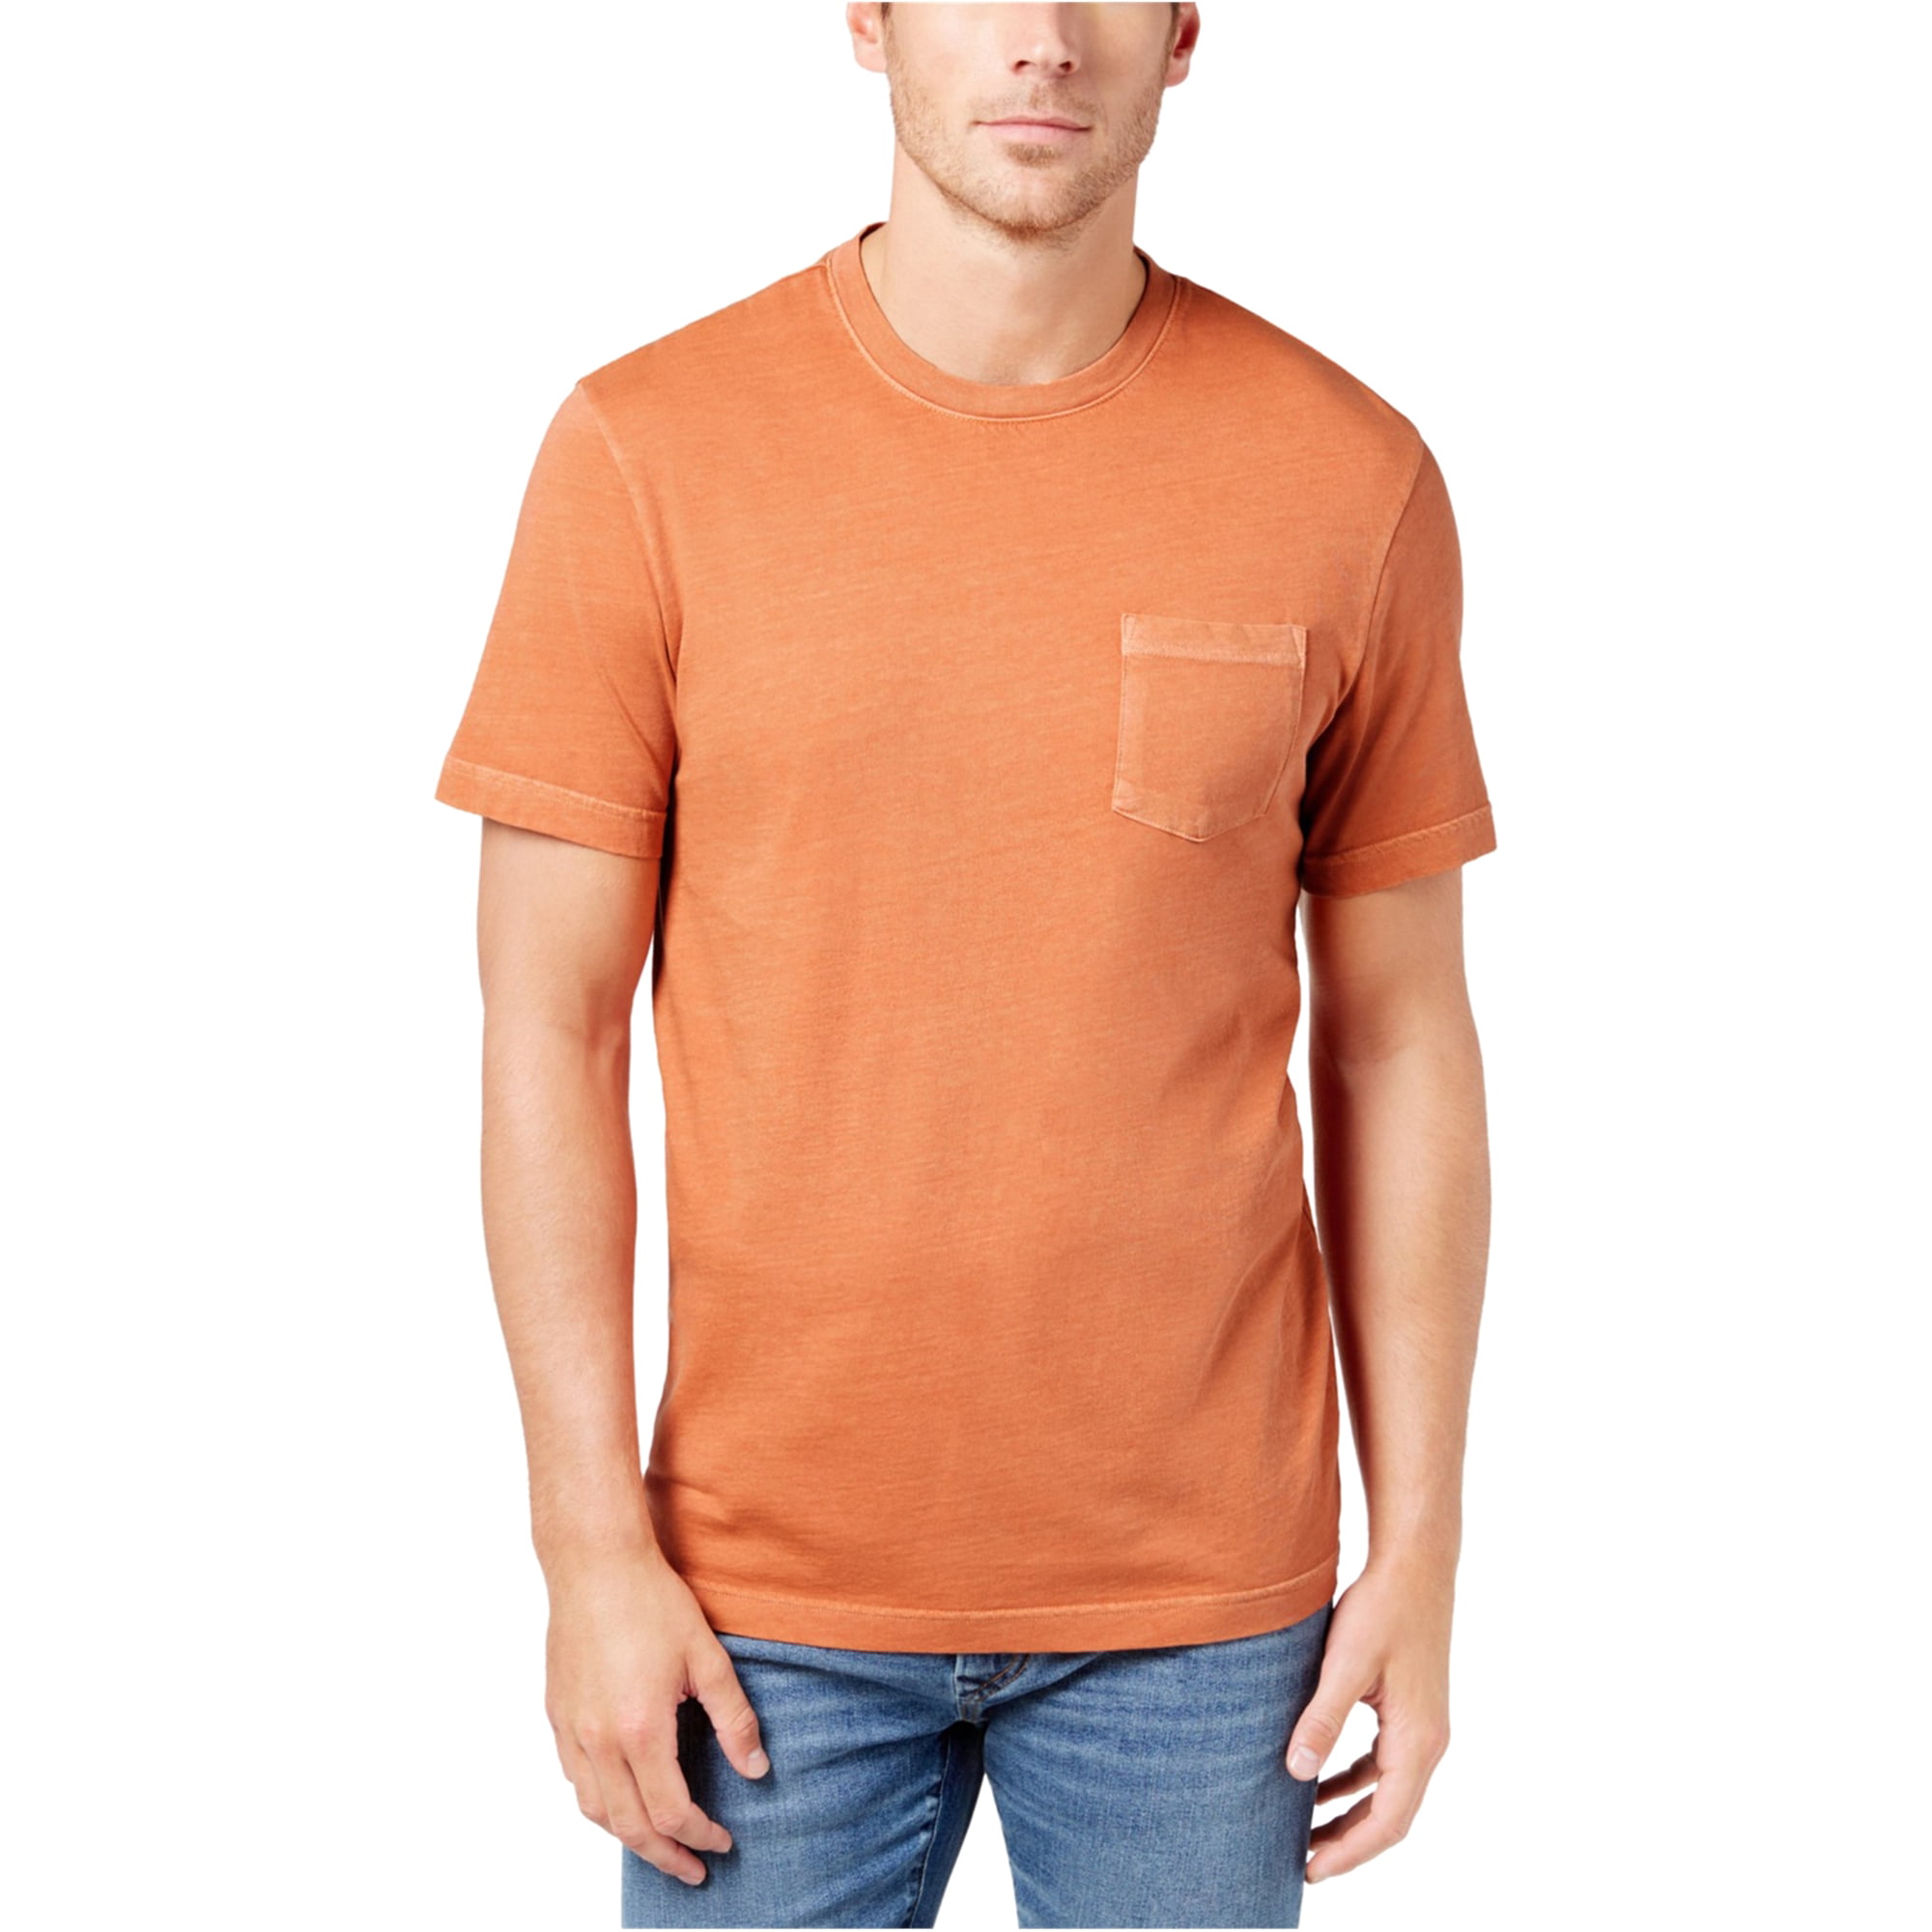 Club Room Mens SS Basic T-Shirt, Orange, Small - Walmart.com